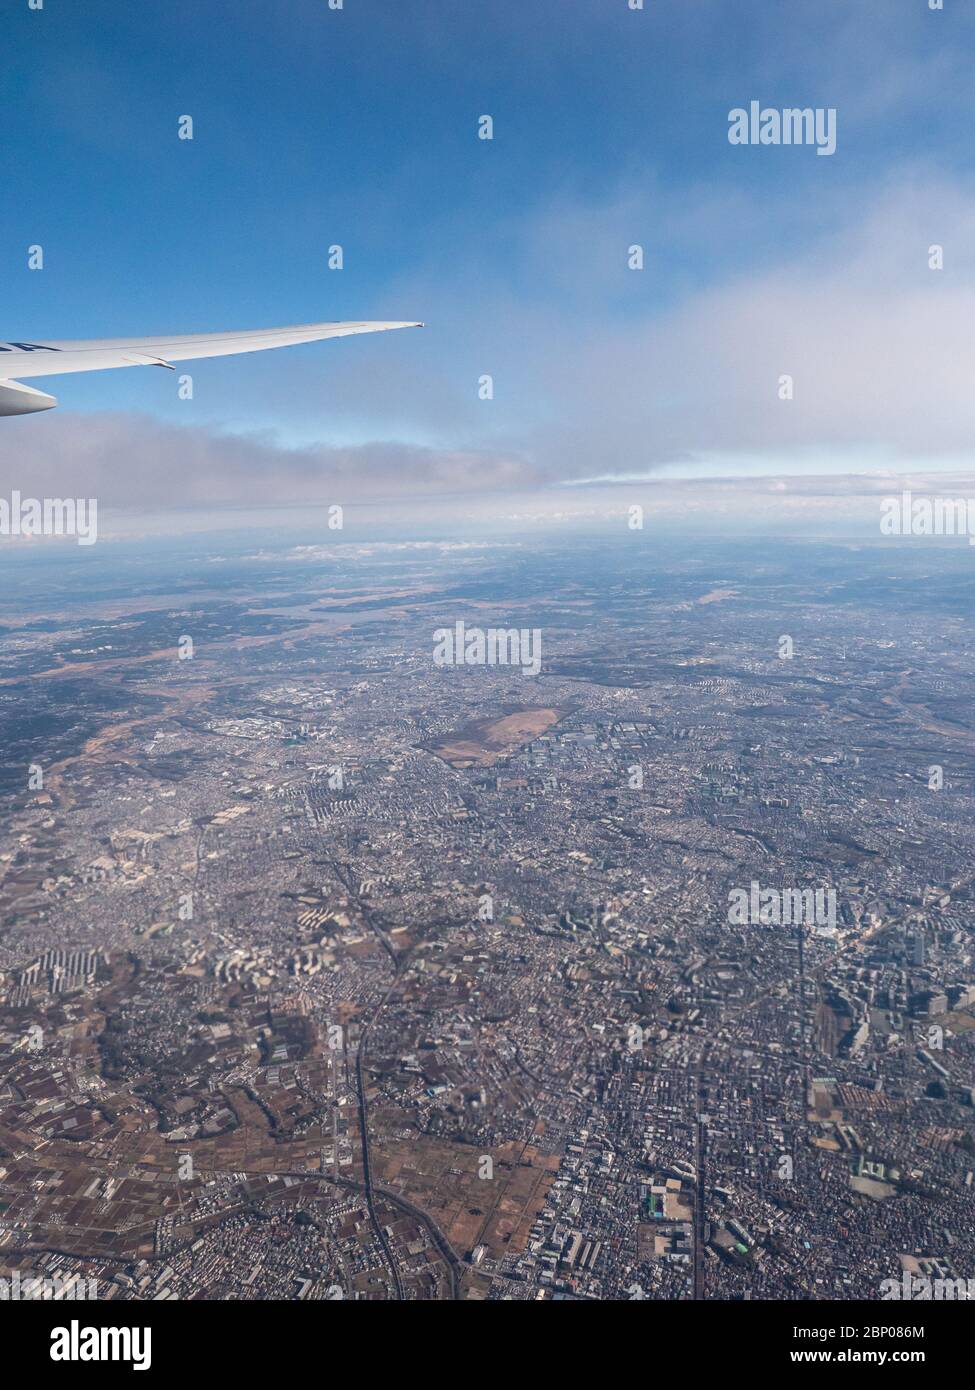 Une ville éloignée vue depuis une fenêtre d'avions. Banque D'Images